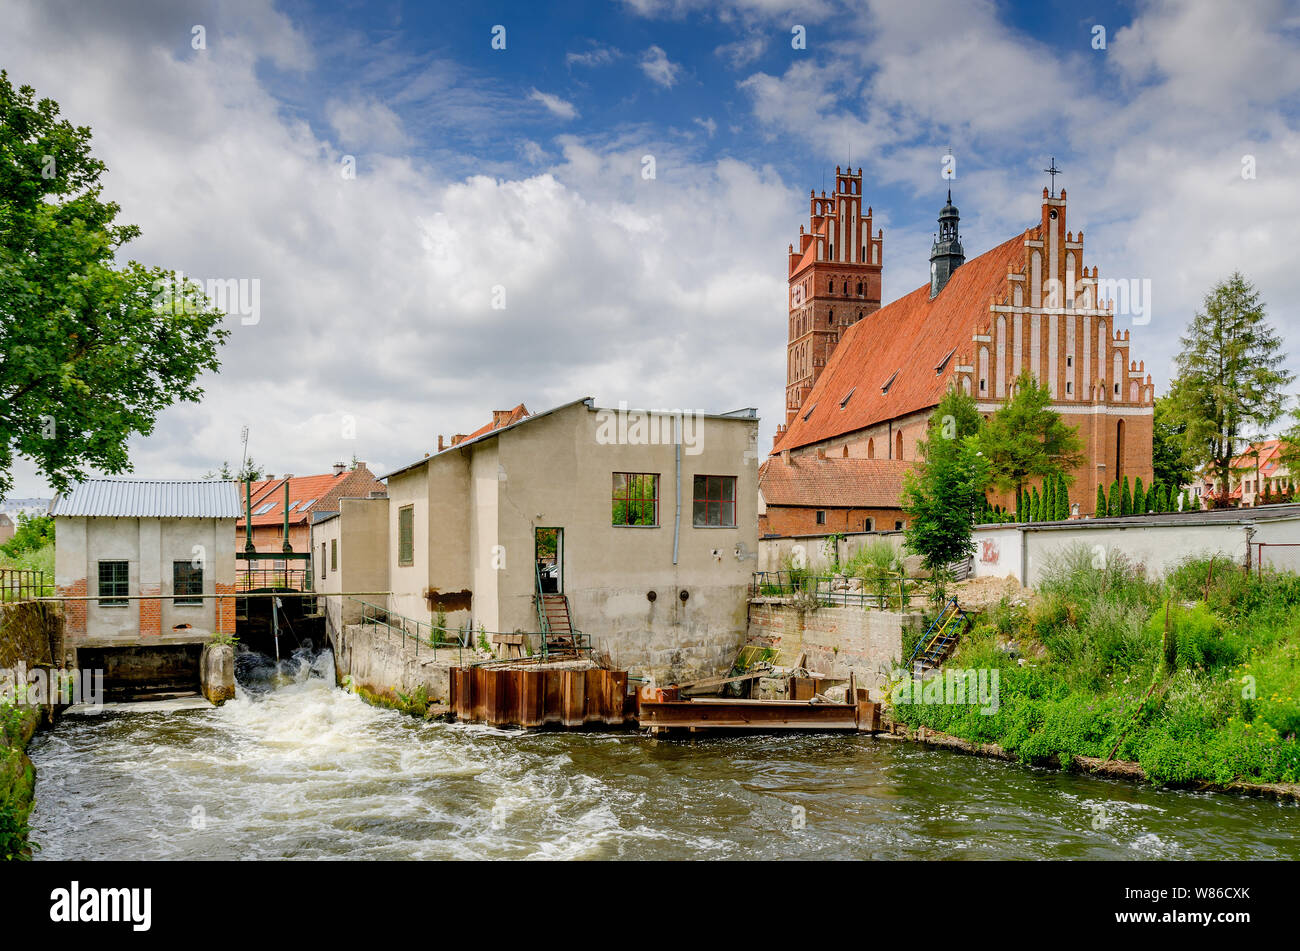 Dobre Miasto, ger. Guttstadt, ermland - masurische Provinz, Polen. Kleines Wasserkraftwerk. Im Hintergrund - 14 Cent. Stiftskirche. Stockfoto